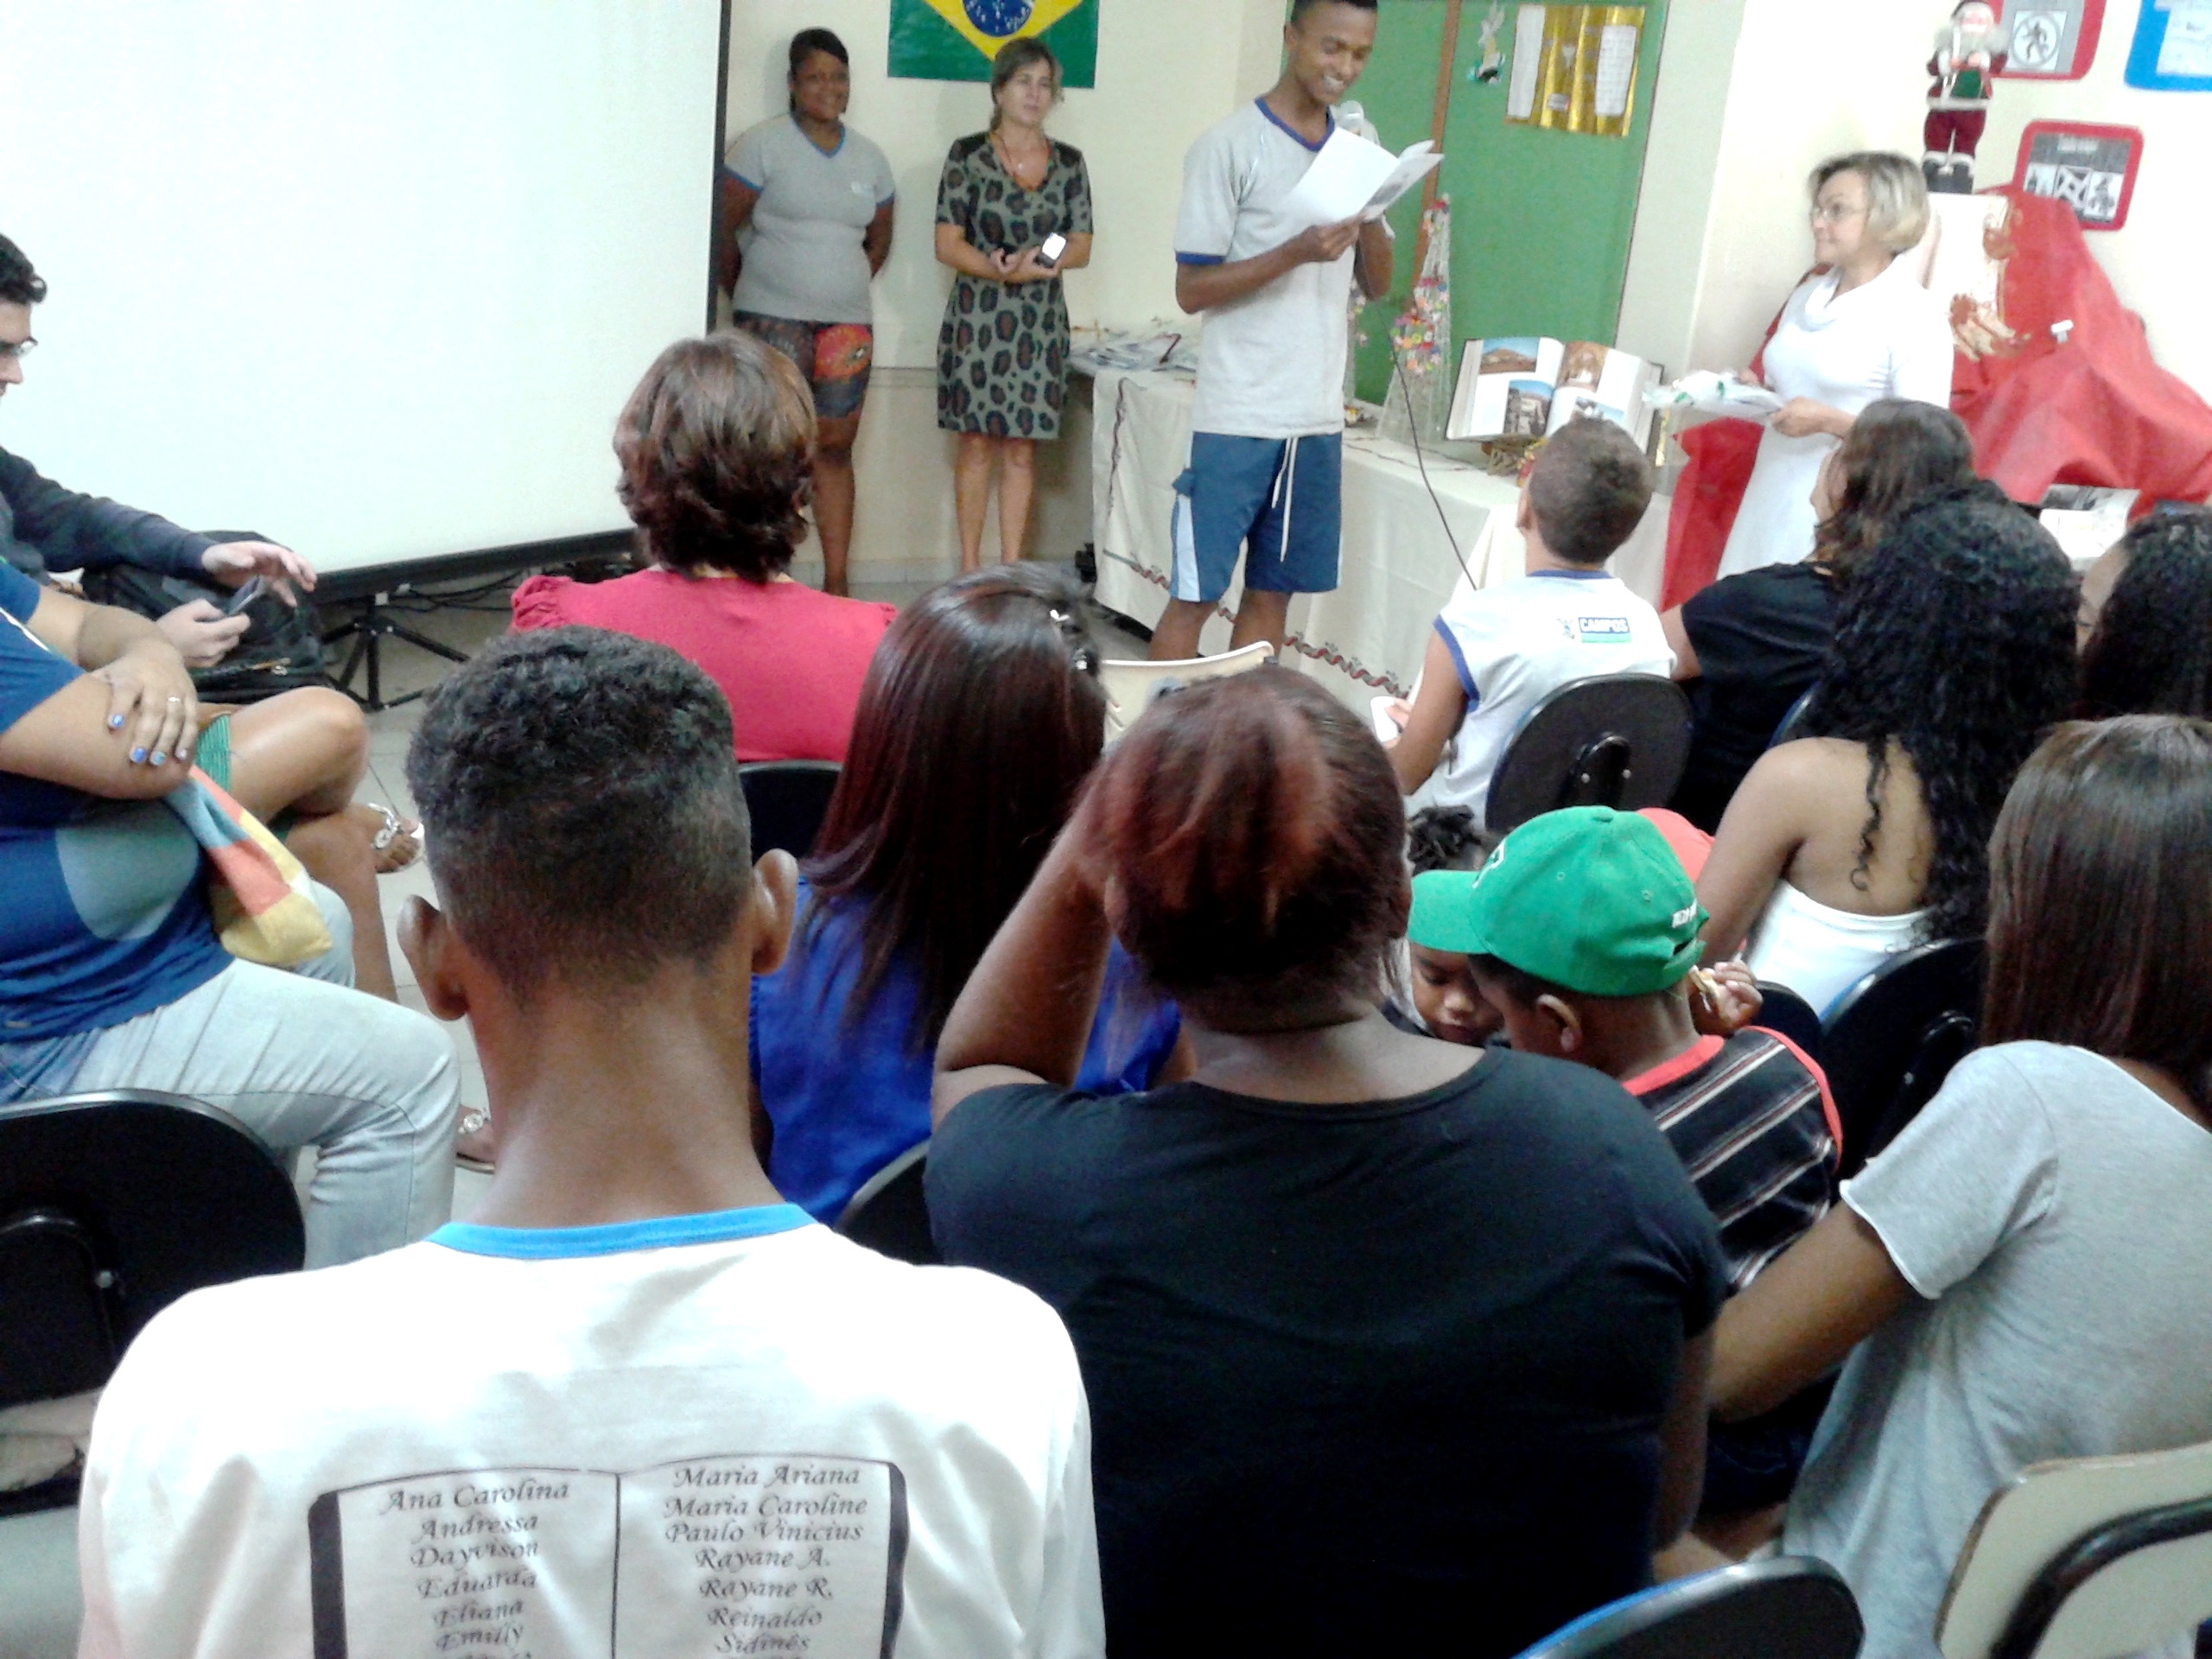 O livro de poesias foi lançado por alunos da Escola Municipal Francisco Faria Barbosa (Foto: Divulgação)